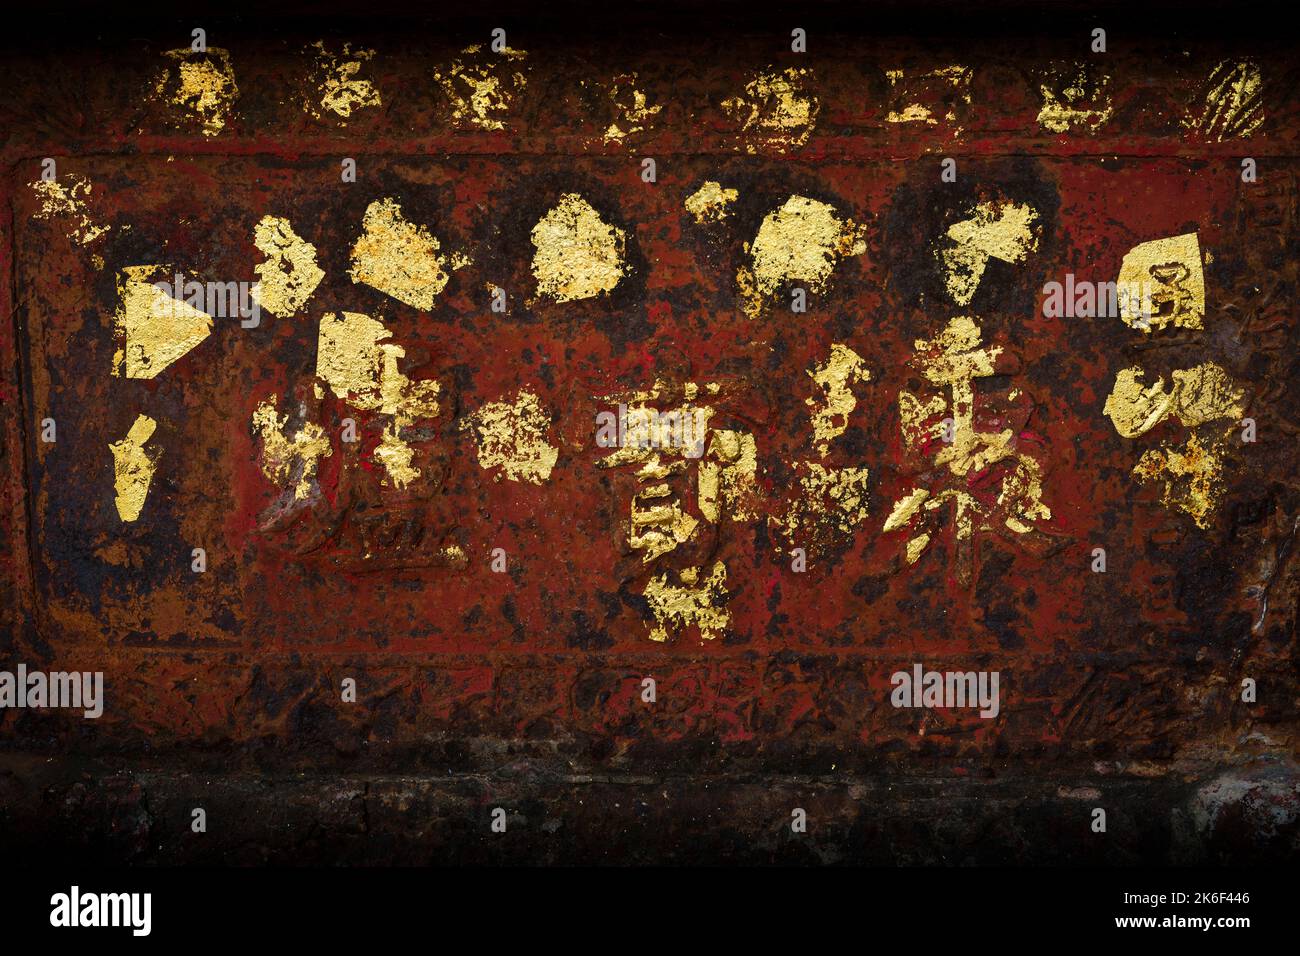 Des personnages chinois agrémentés de feuilles d'or sur un censeur de fer dans le temple Tin Hau, Repulse Bay, île de Hong Kong Banque D'Images